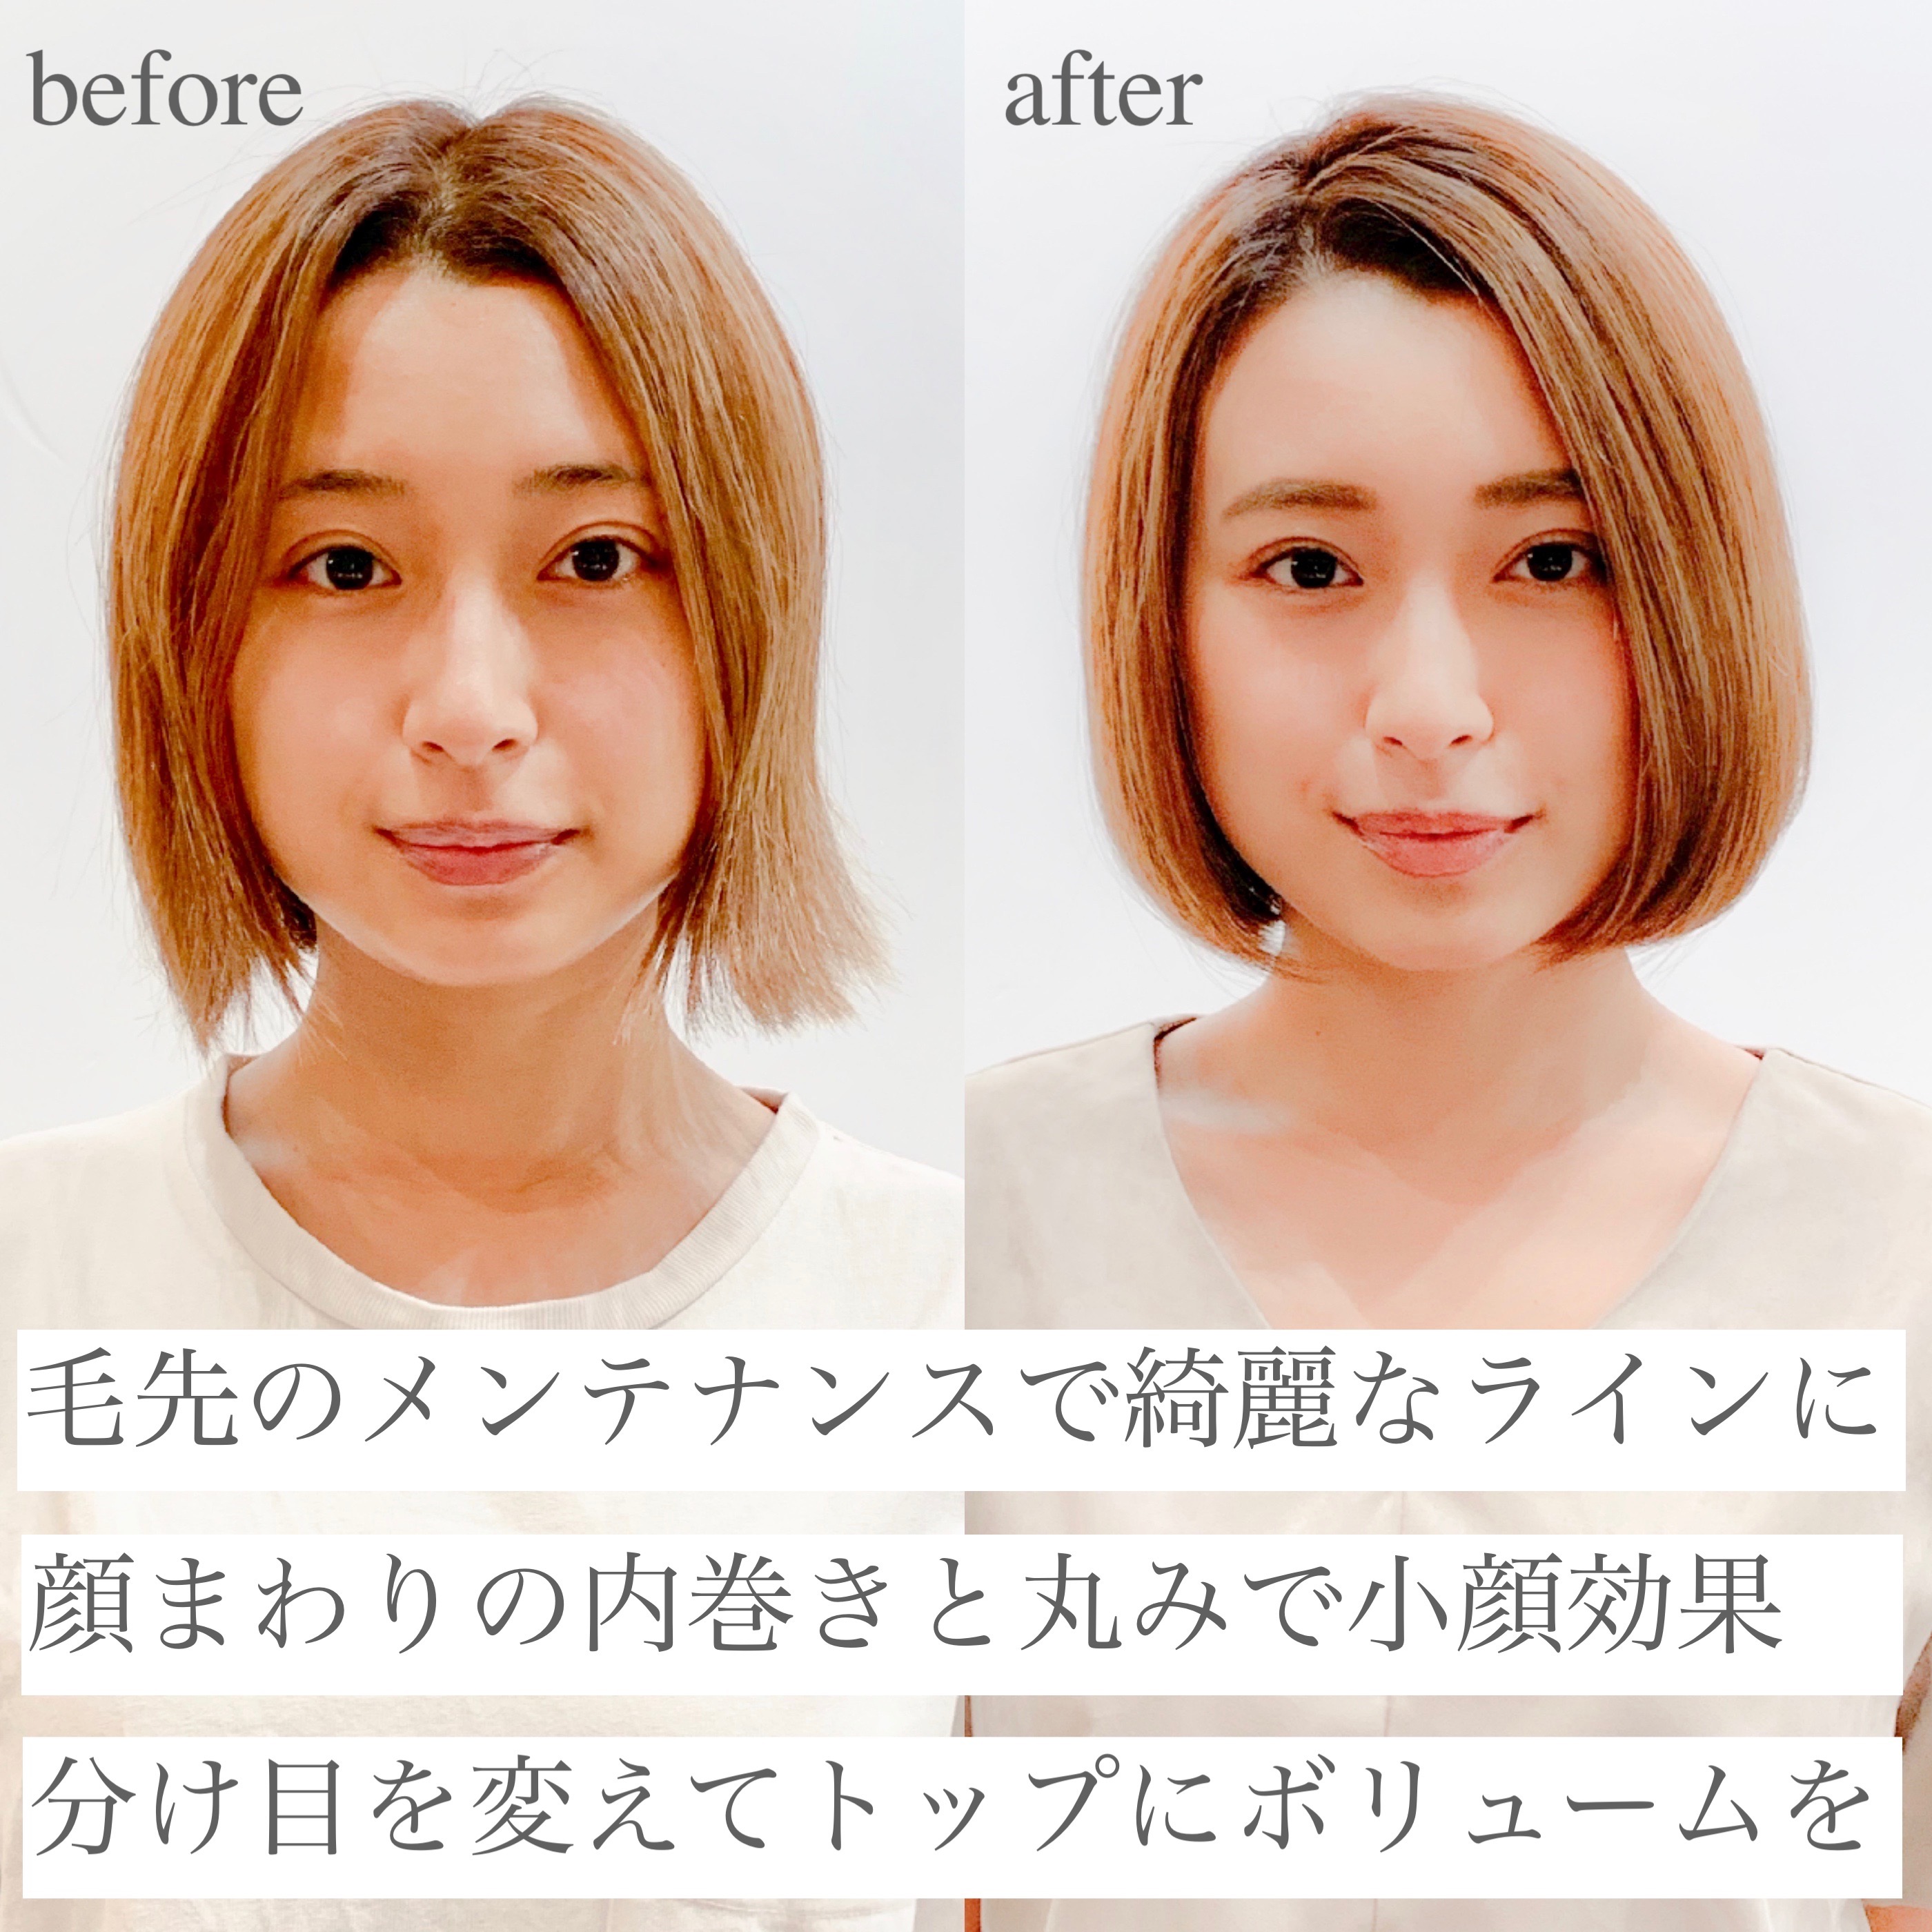 21年夏 大人ボブを 前髪あり 前髪なし の変化で 今の自分に似合う髪型に 似合わせカットが上手い東京の美容師 美容室minx銀座 蛭田のブログ